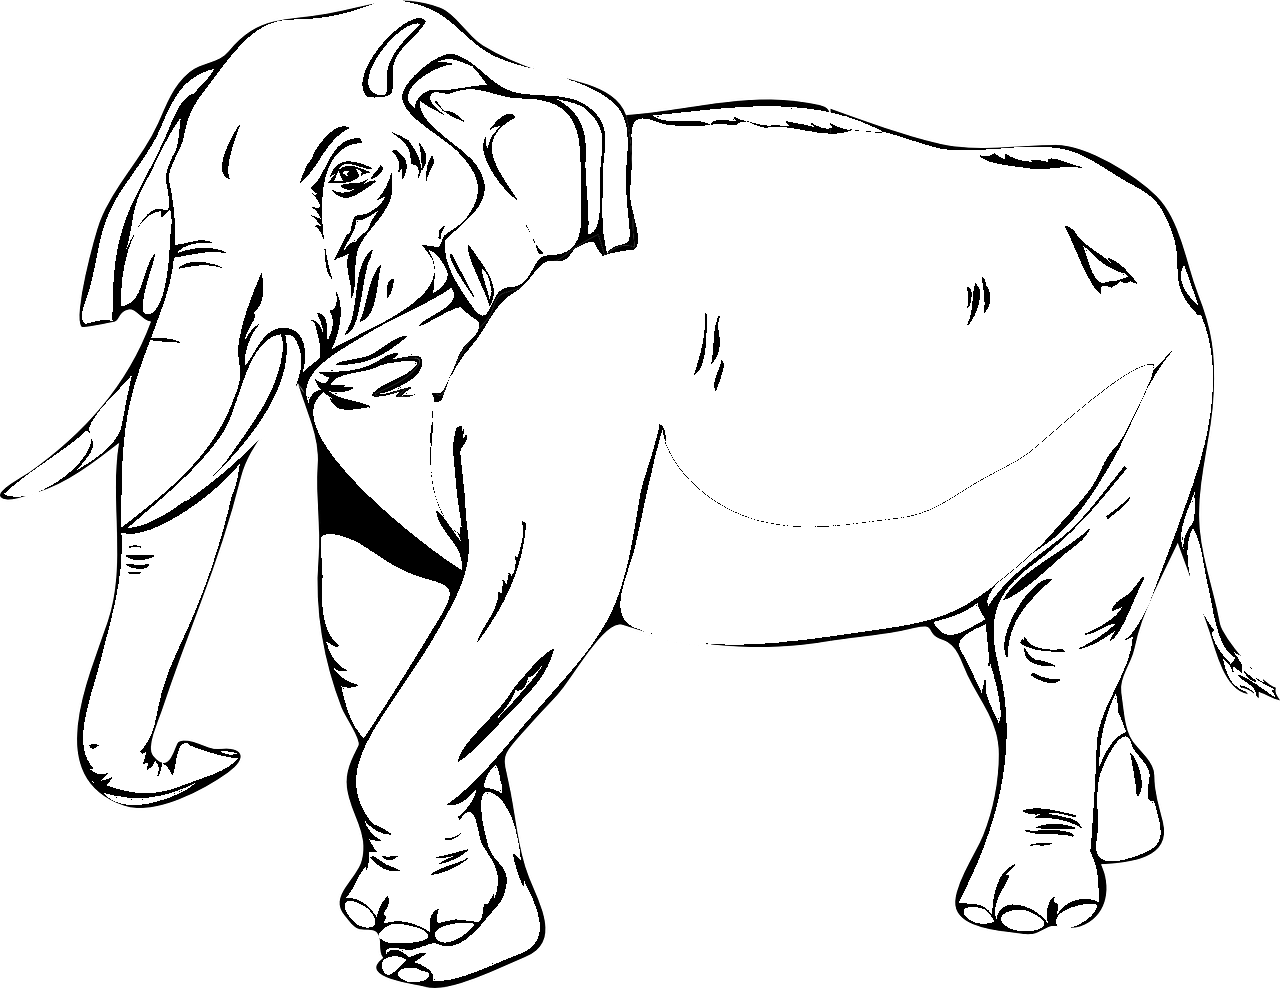 Disegno da colorare di elefante realistico